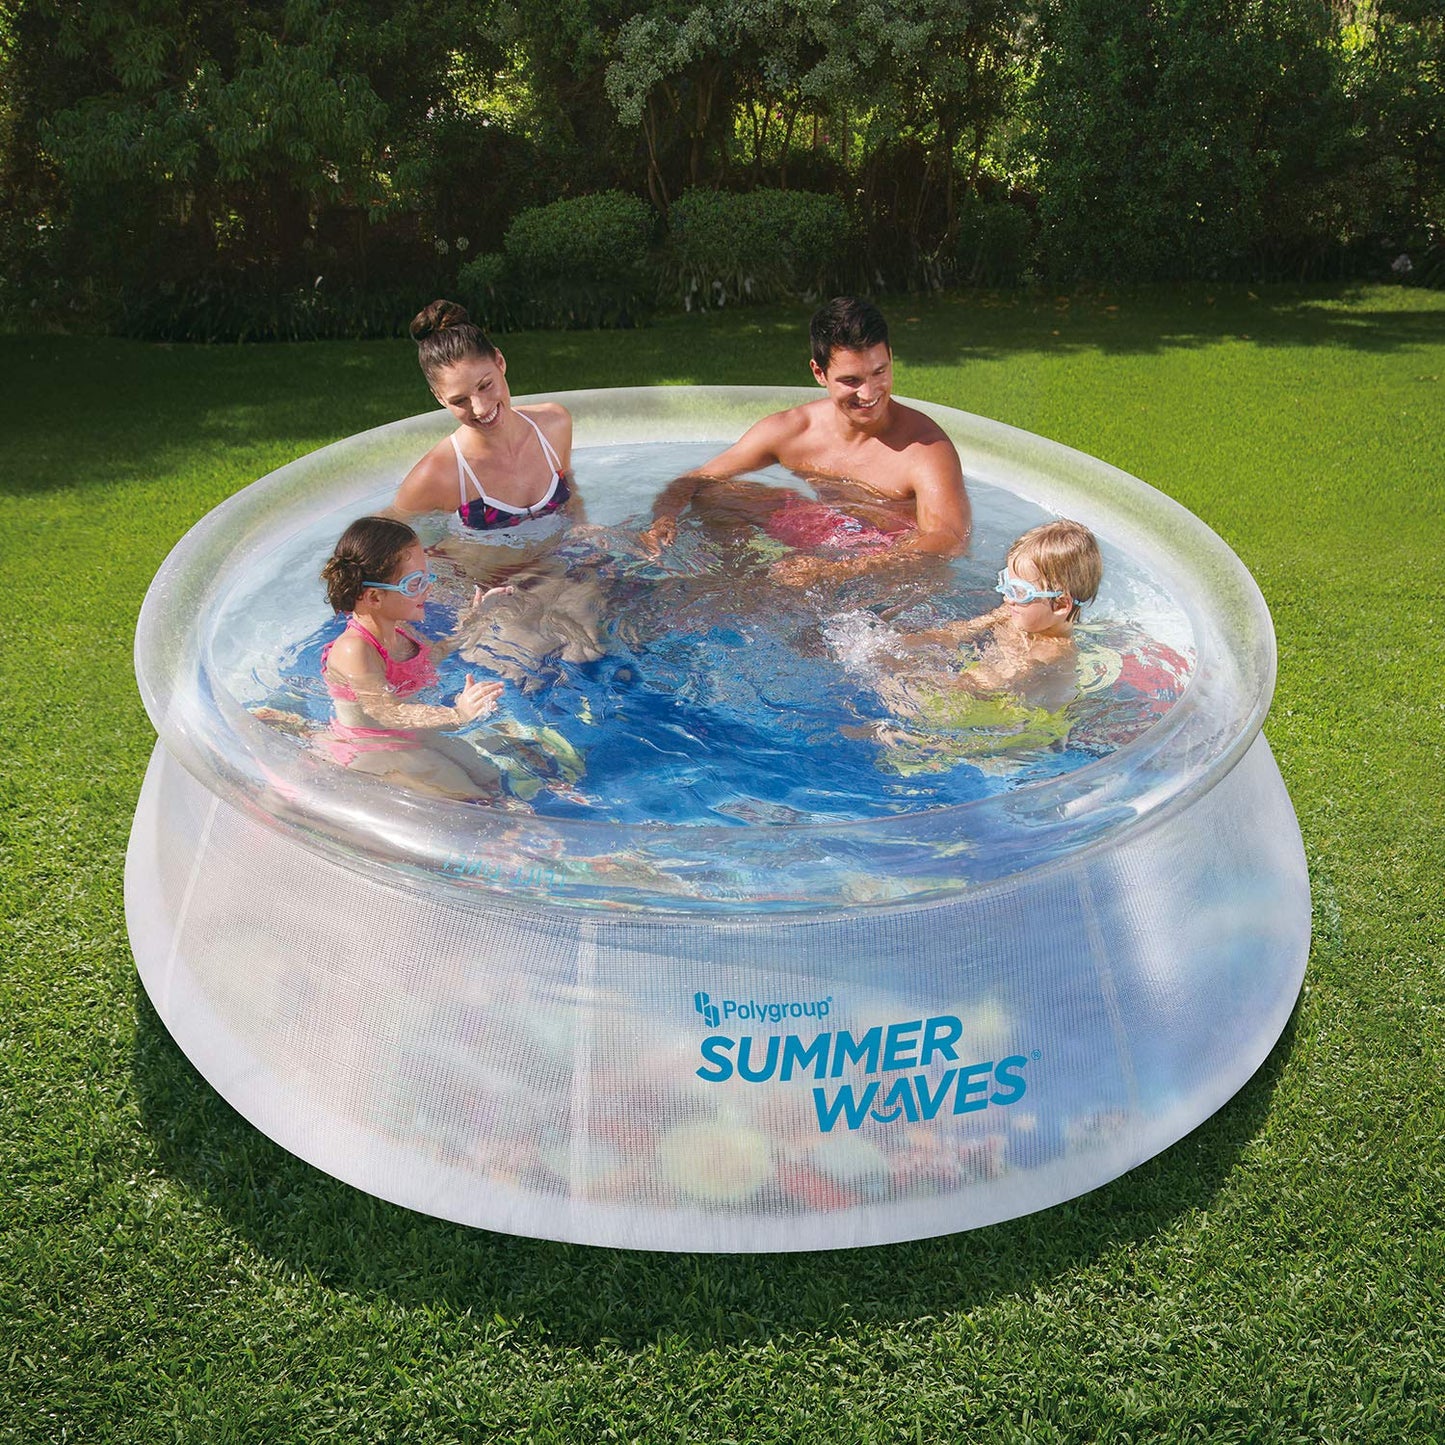 Summer Waves P10008305 Piscine pour enfants avec anneau supérieur transparent à réglage rapide transparent de 2,4 m de large avec graphisme Deep Sea Ocean Life et lunettes 3D, transparent